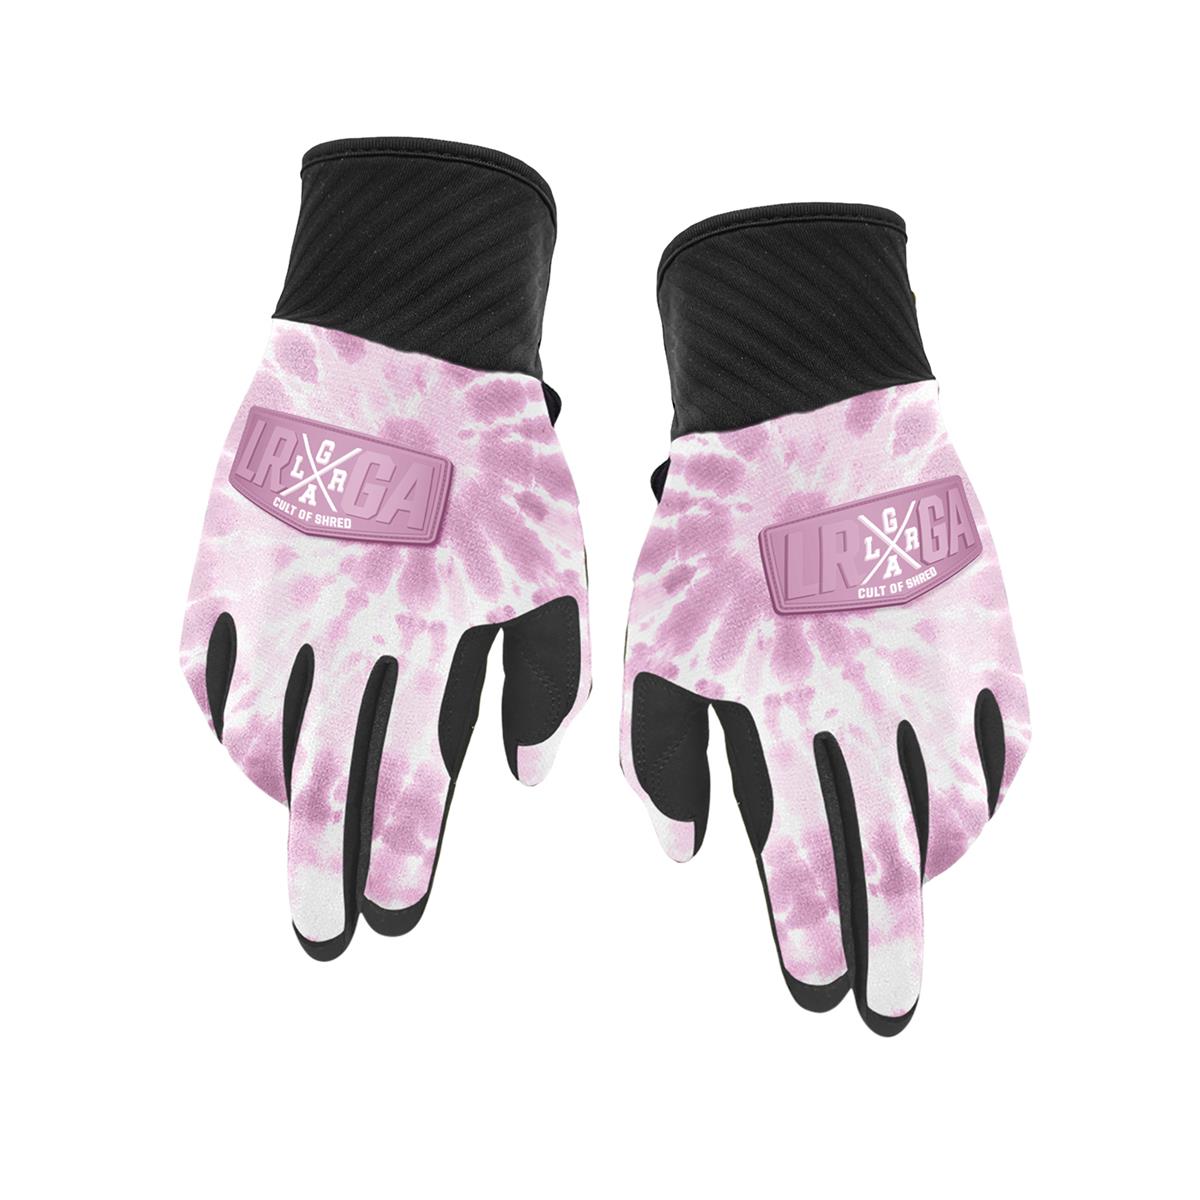 Loose Riders MTB Gloves Freeride Pink Tie Dye